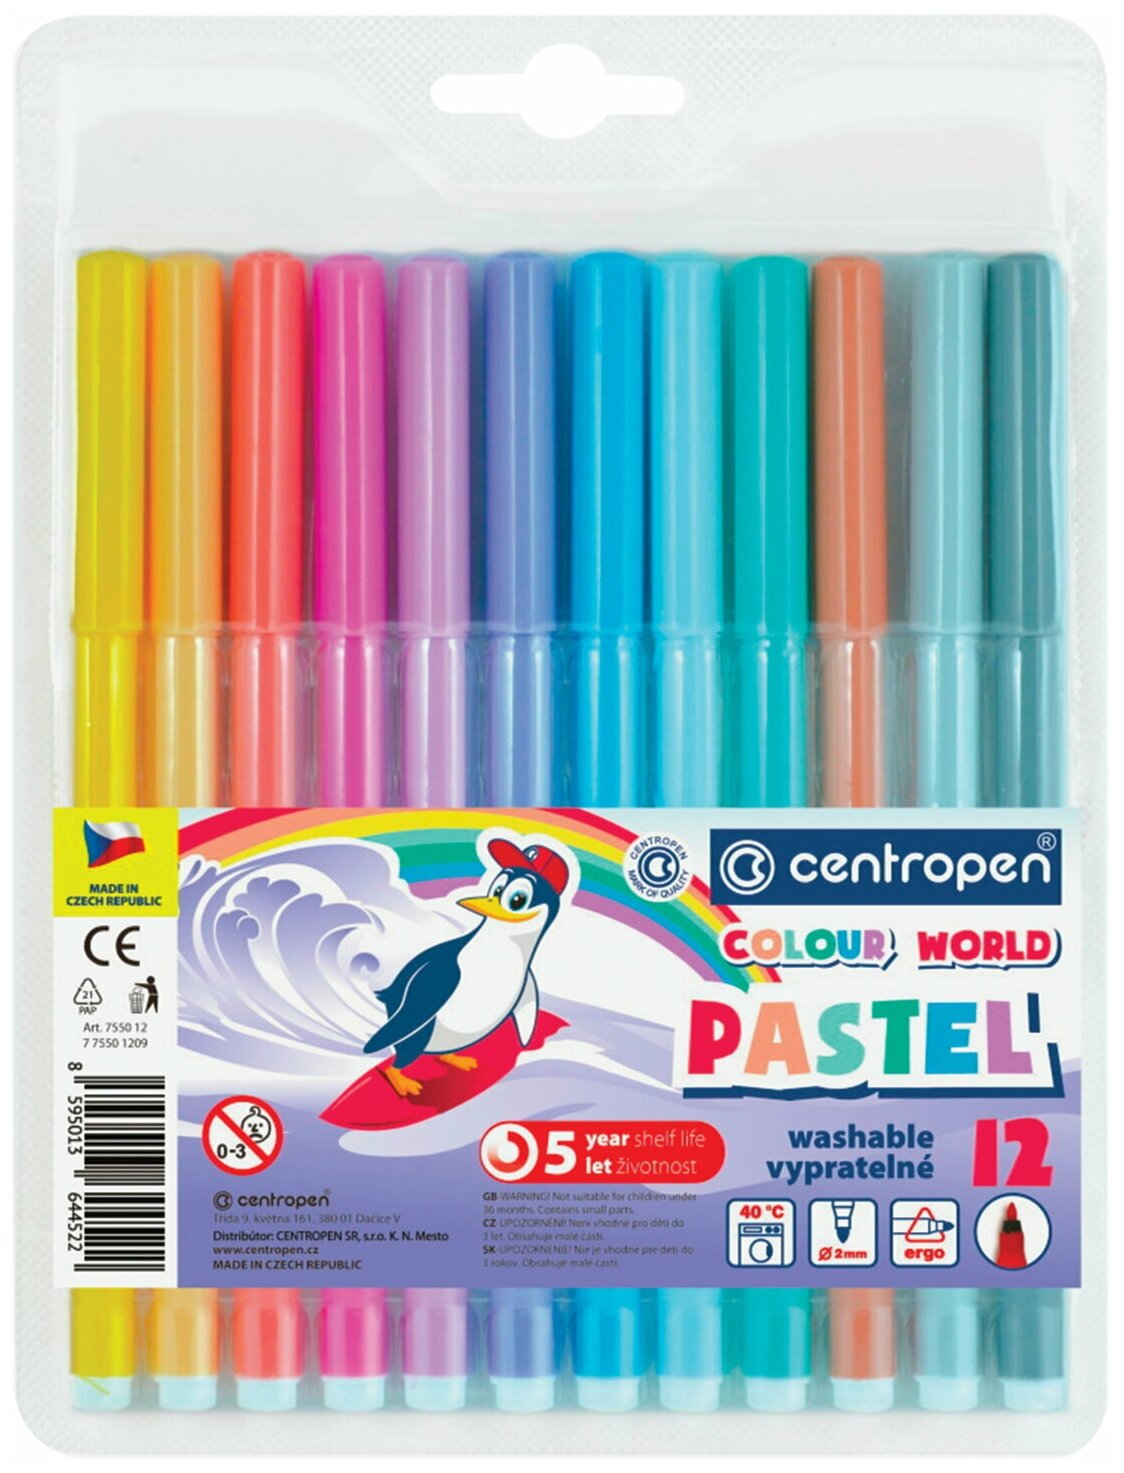 Фломастеры пастельные 12 цветов CENTROPEN "Colour World Pastel", смываемые, 7550/12TP, ш/к 44737